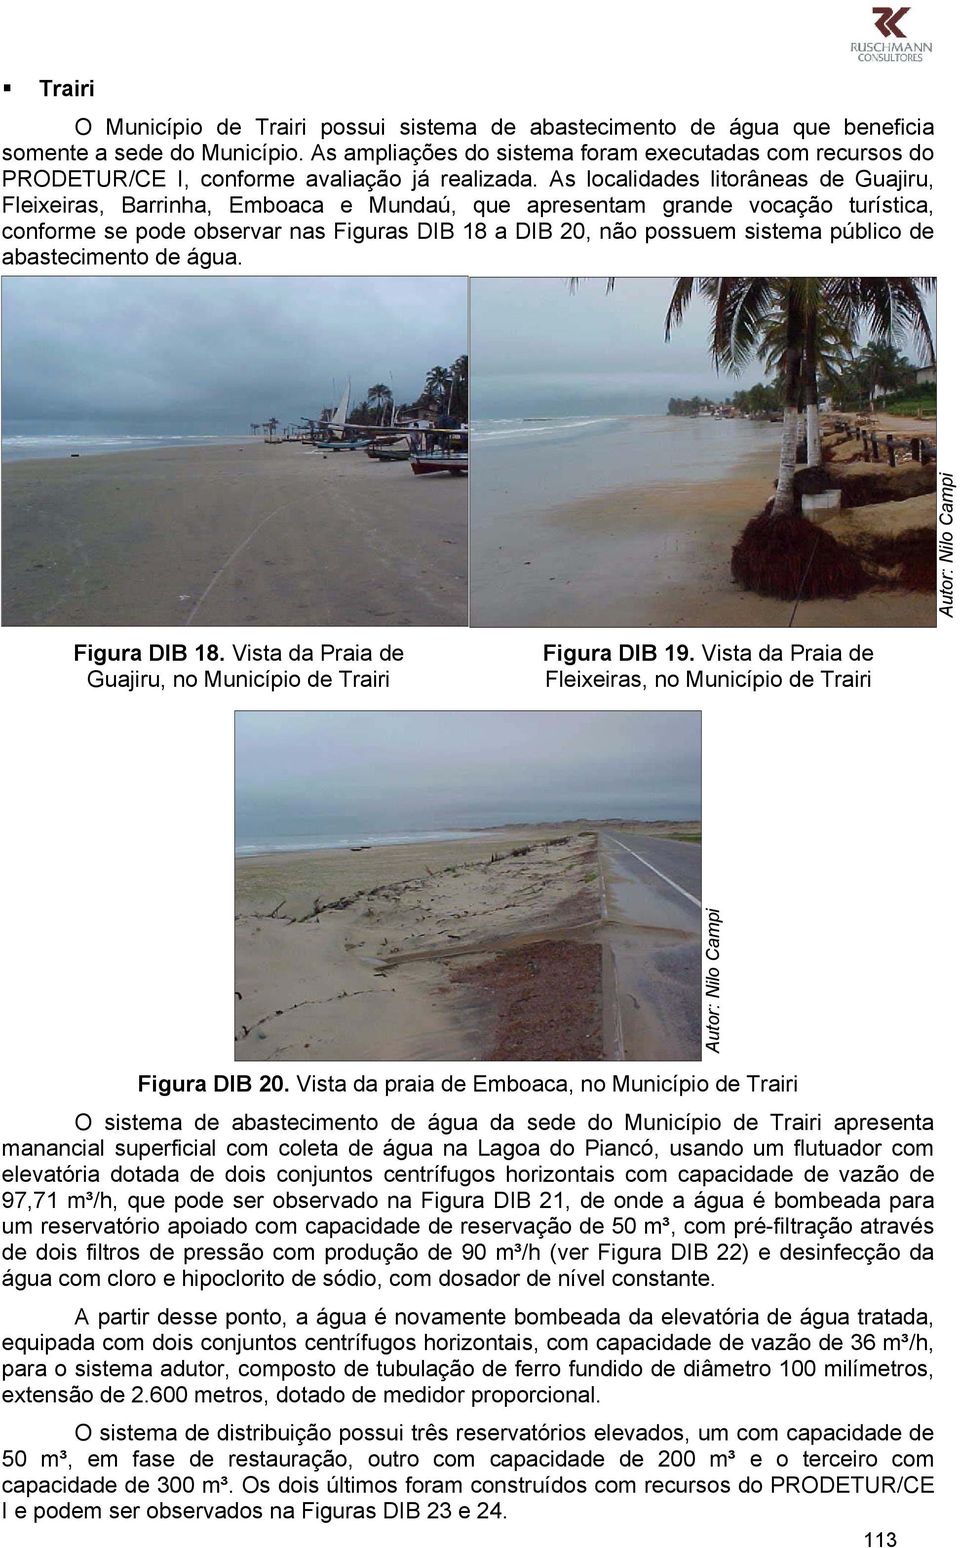 As localidades litorâneas de Guajiru, Fleixeiras, Barrinha, Emboaca e Mundaú, que apresentam grande vocação turística, conforme se pode observar nas Figuras DIB 18 a DIB 20, não possuem sistema